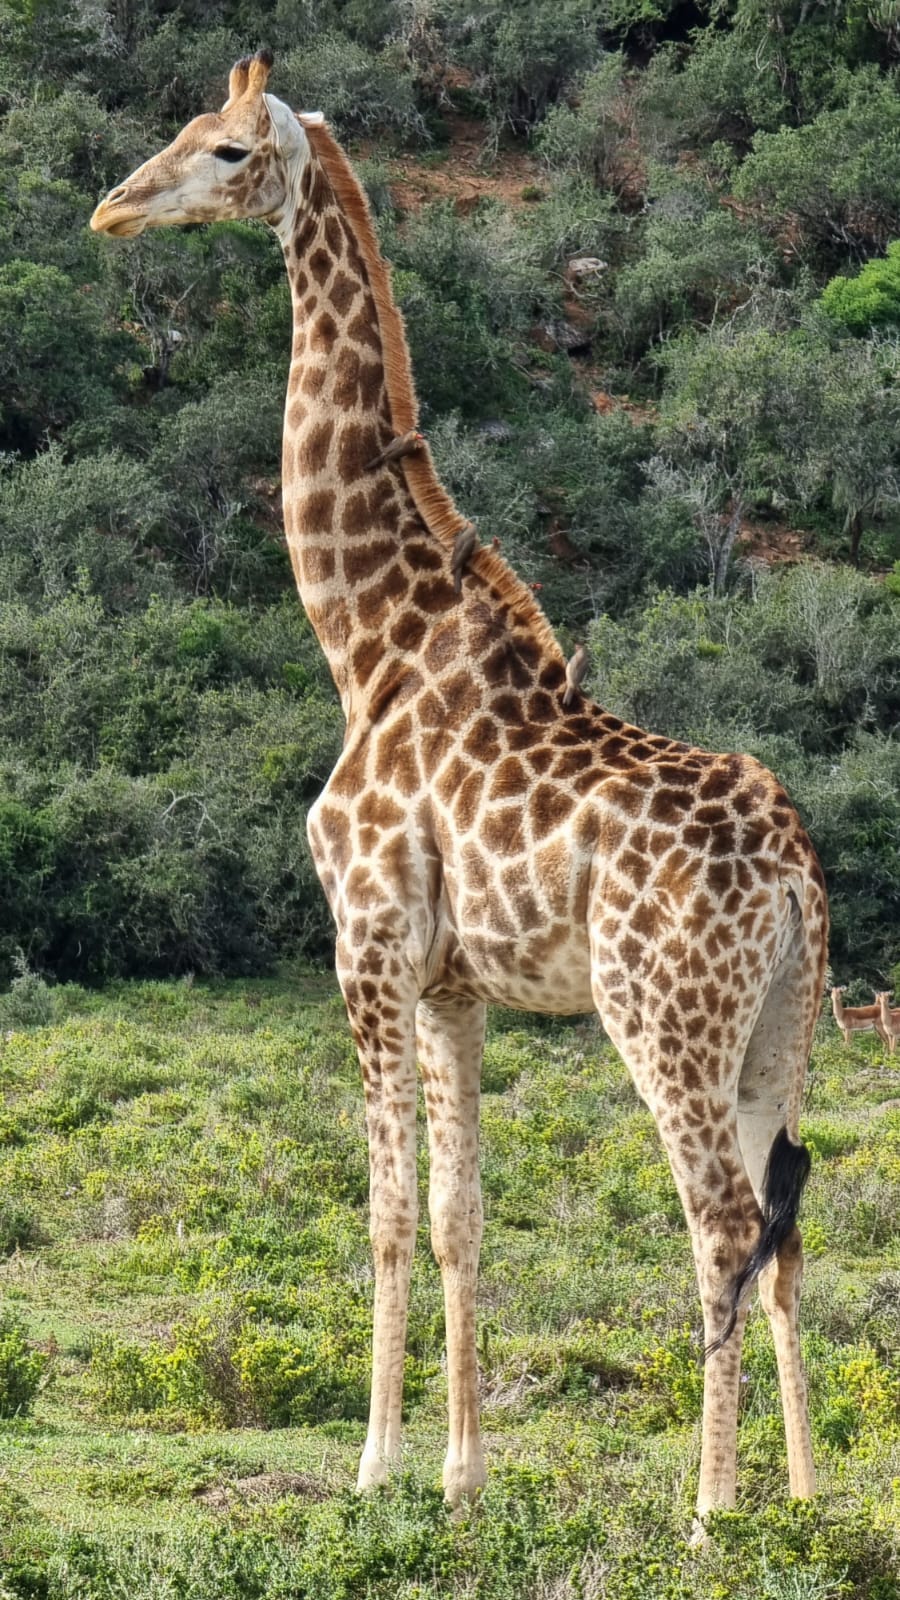 Oxpecker on a giraffe at Kariega taken by Wayne